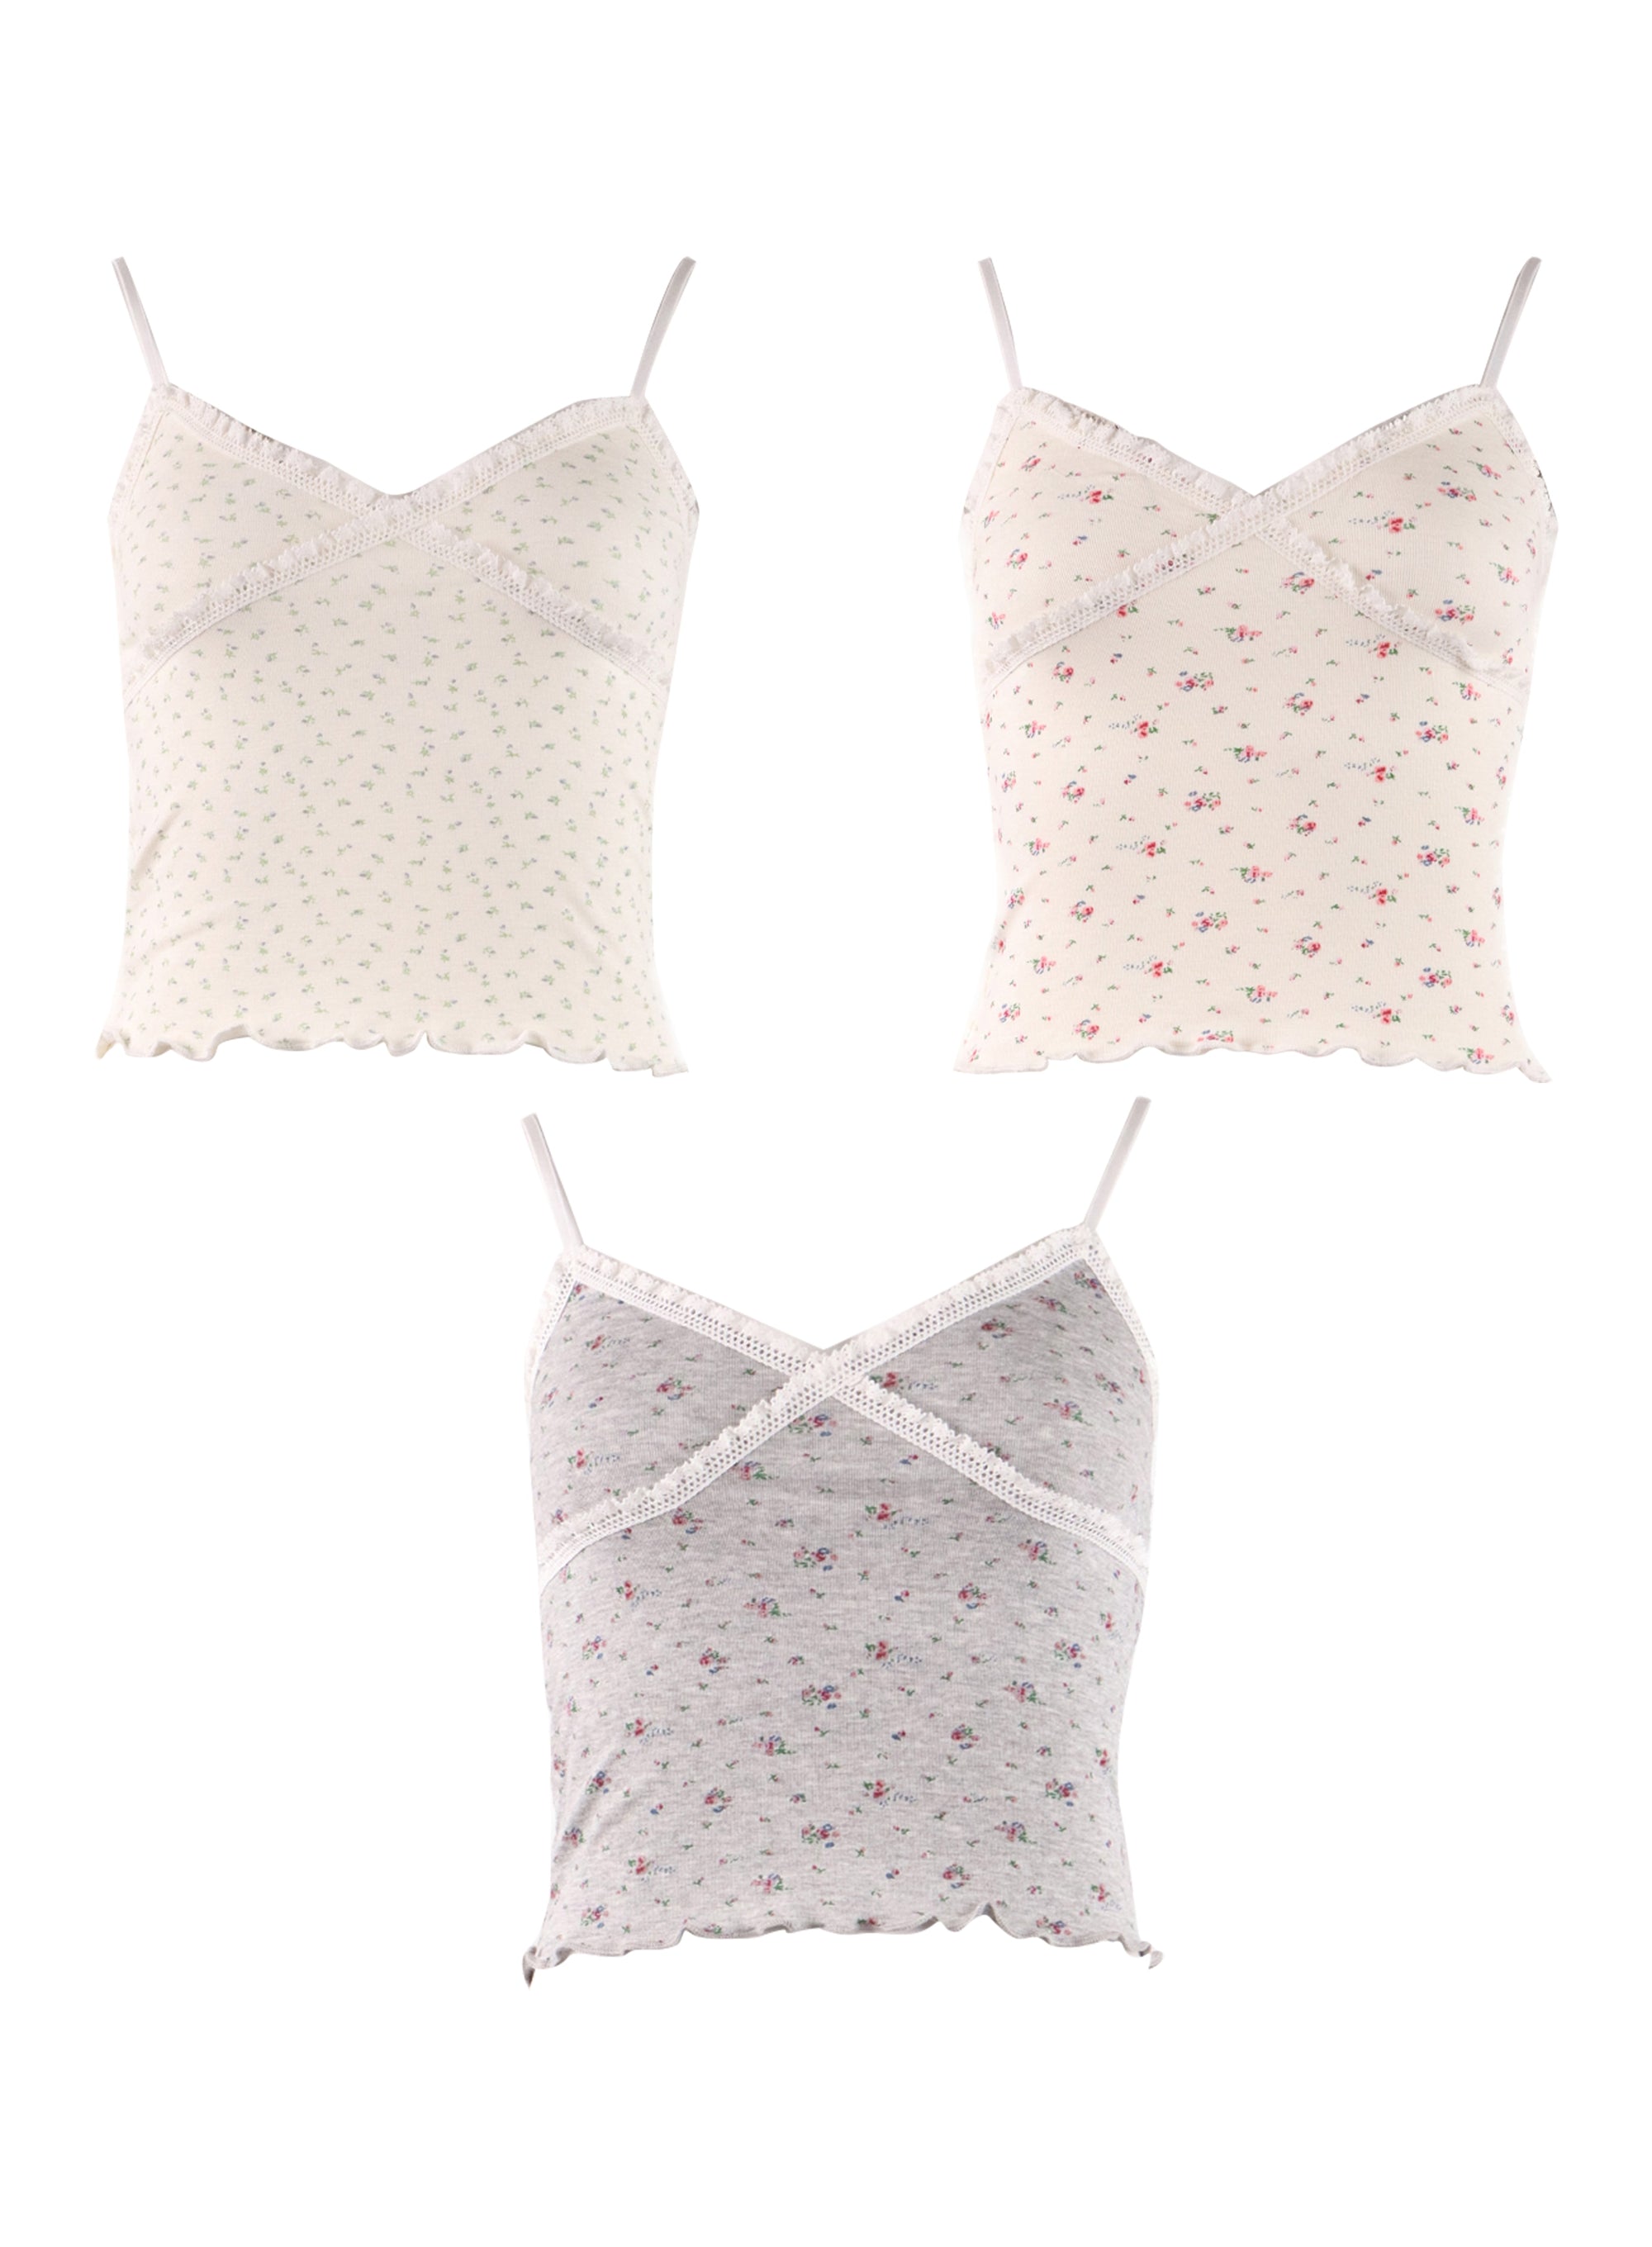 Lace-Trim Floral Print Camisole Crop Top